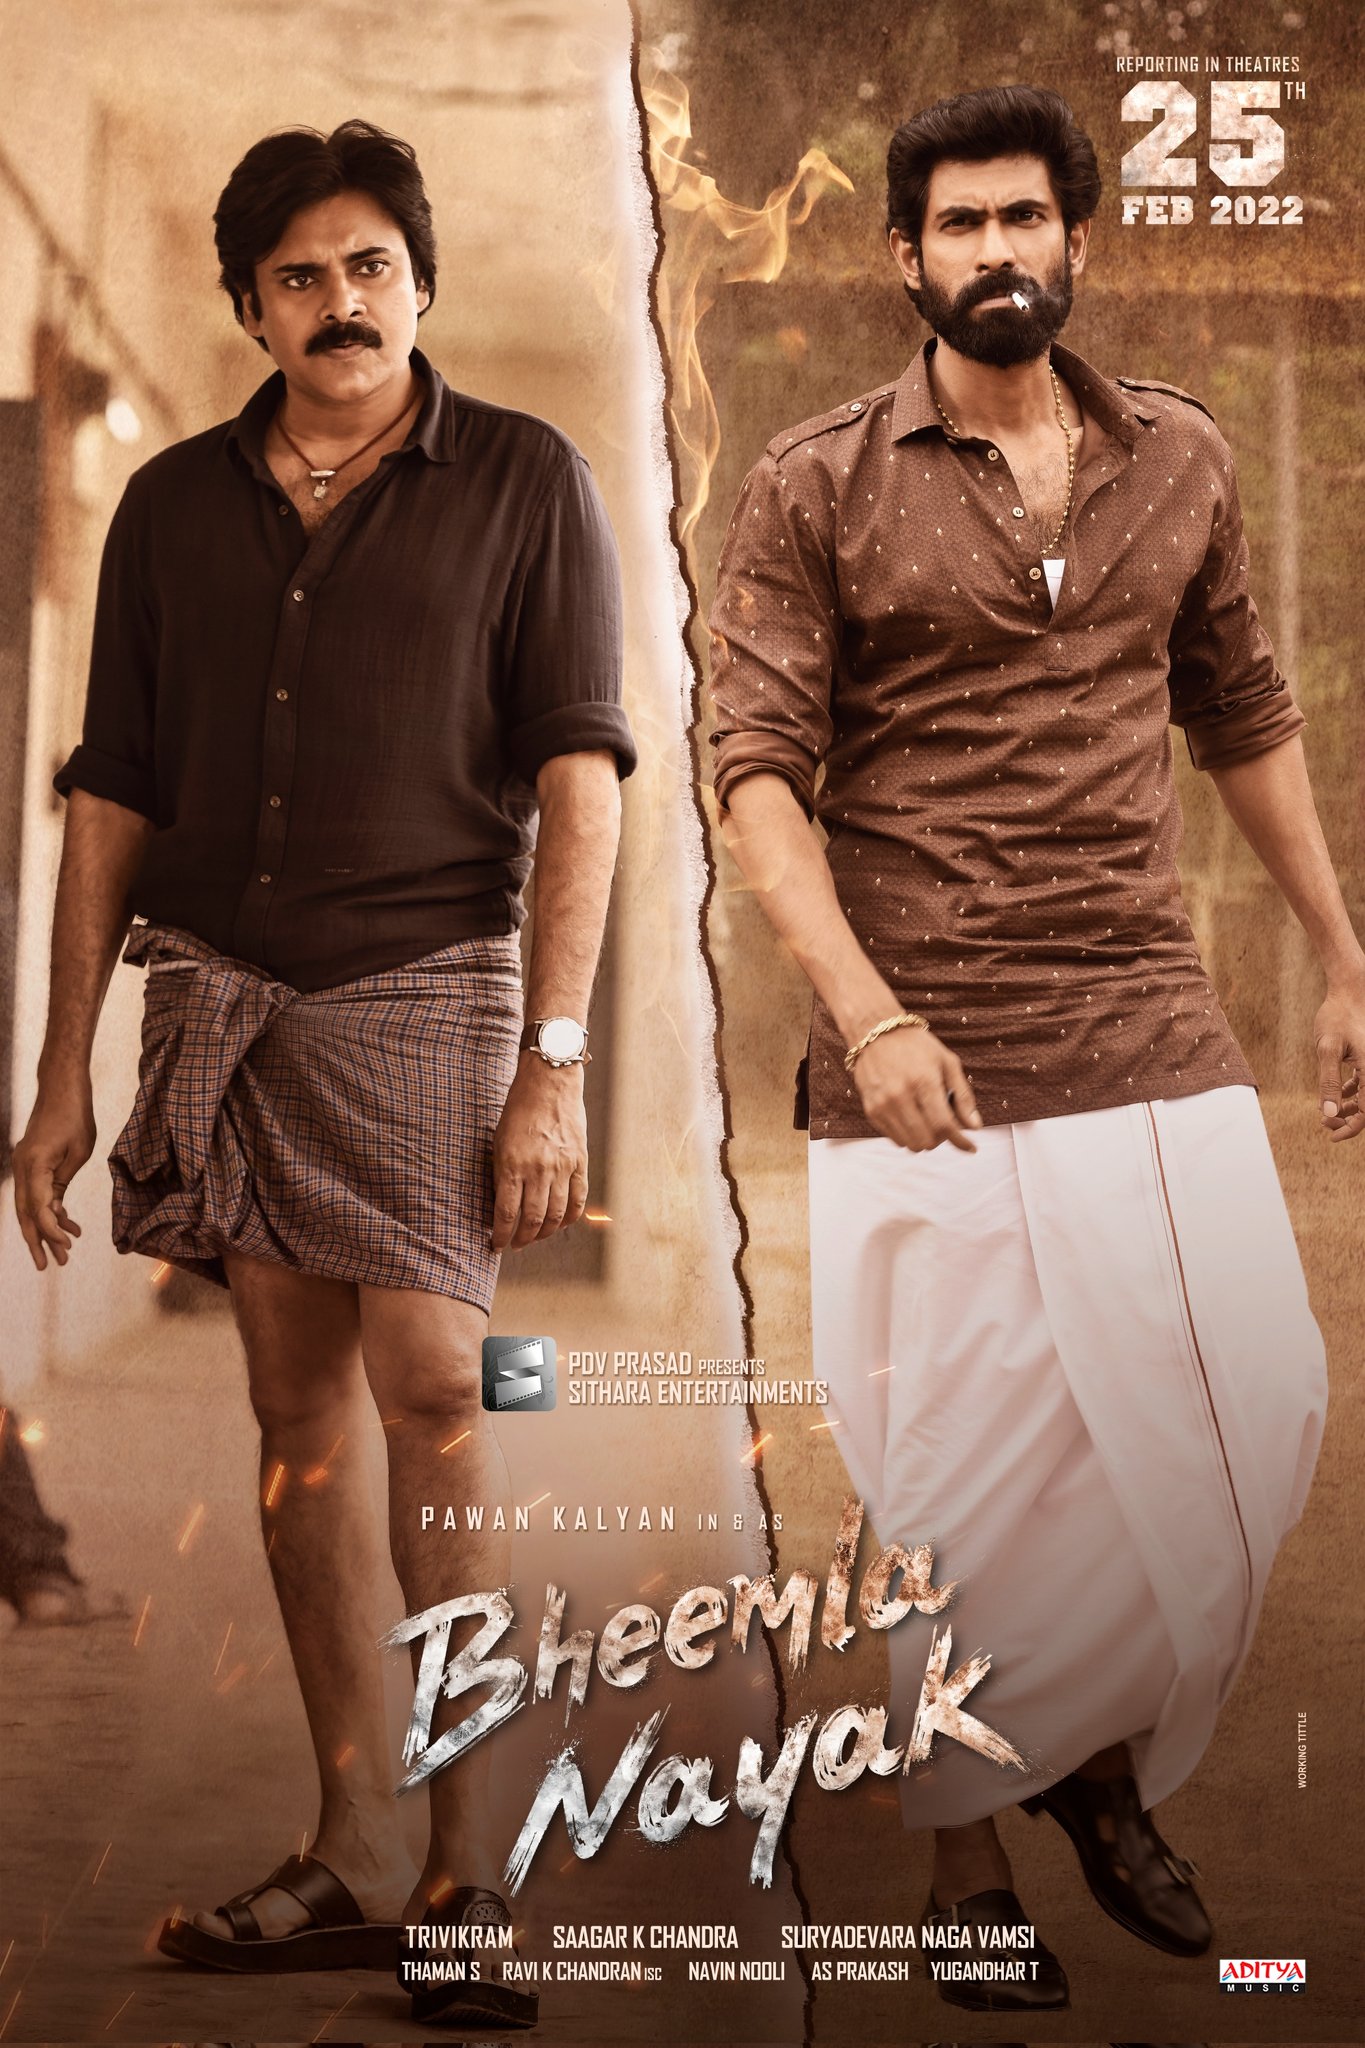 Bheemla Nayak Movie Download, Telugu Full Movie Review Watch Online Free